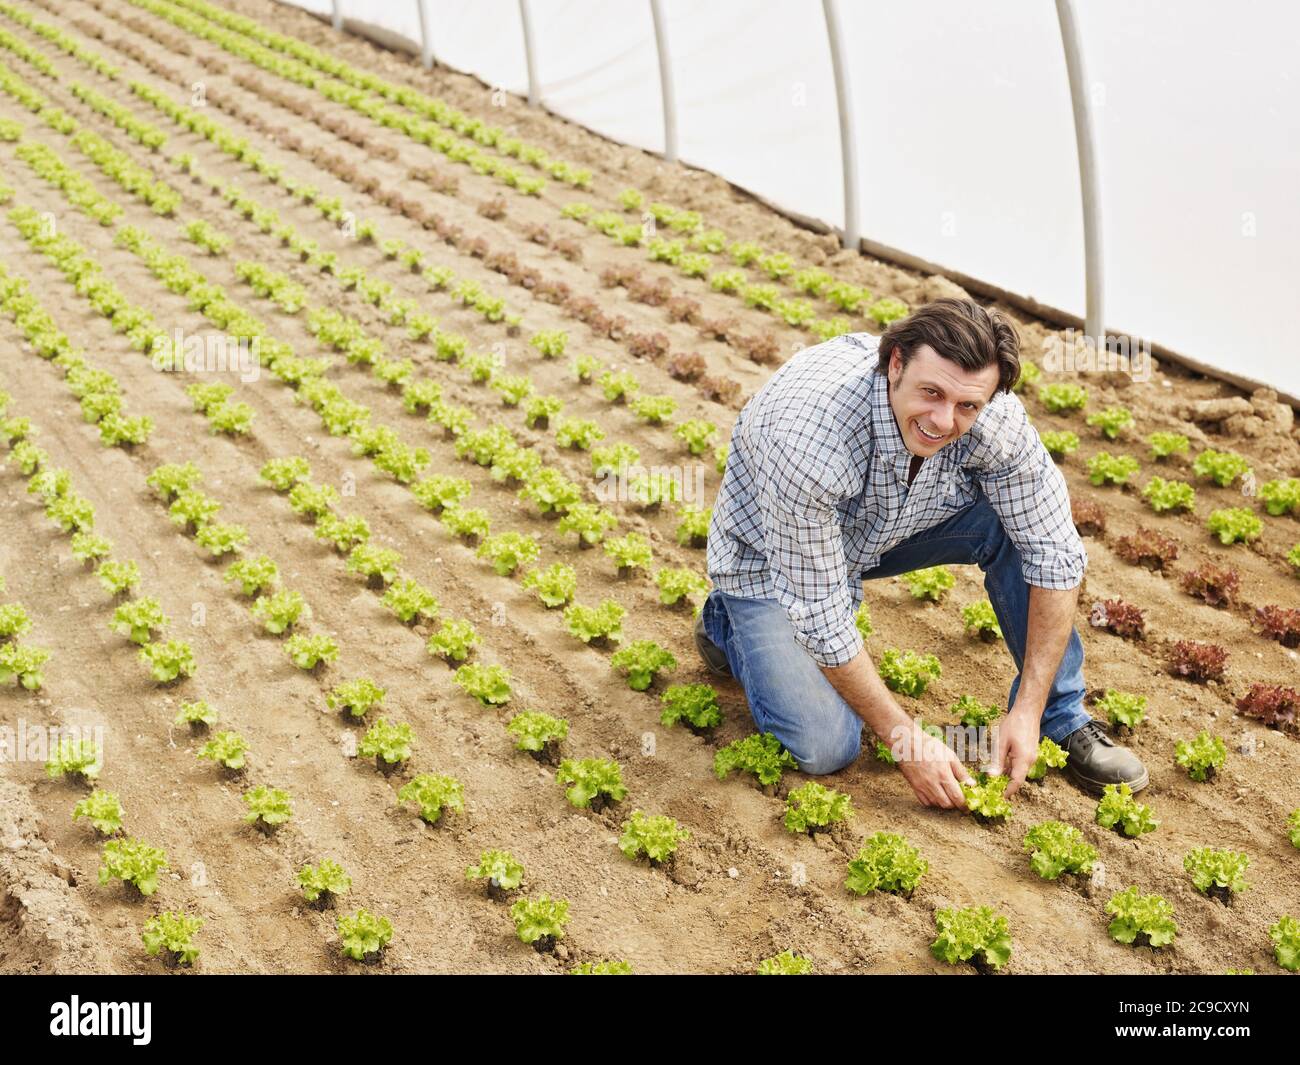 Agricultor que comprueba la calidad de las plantas en Green House Foto de stock